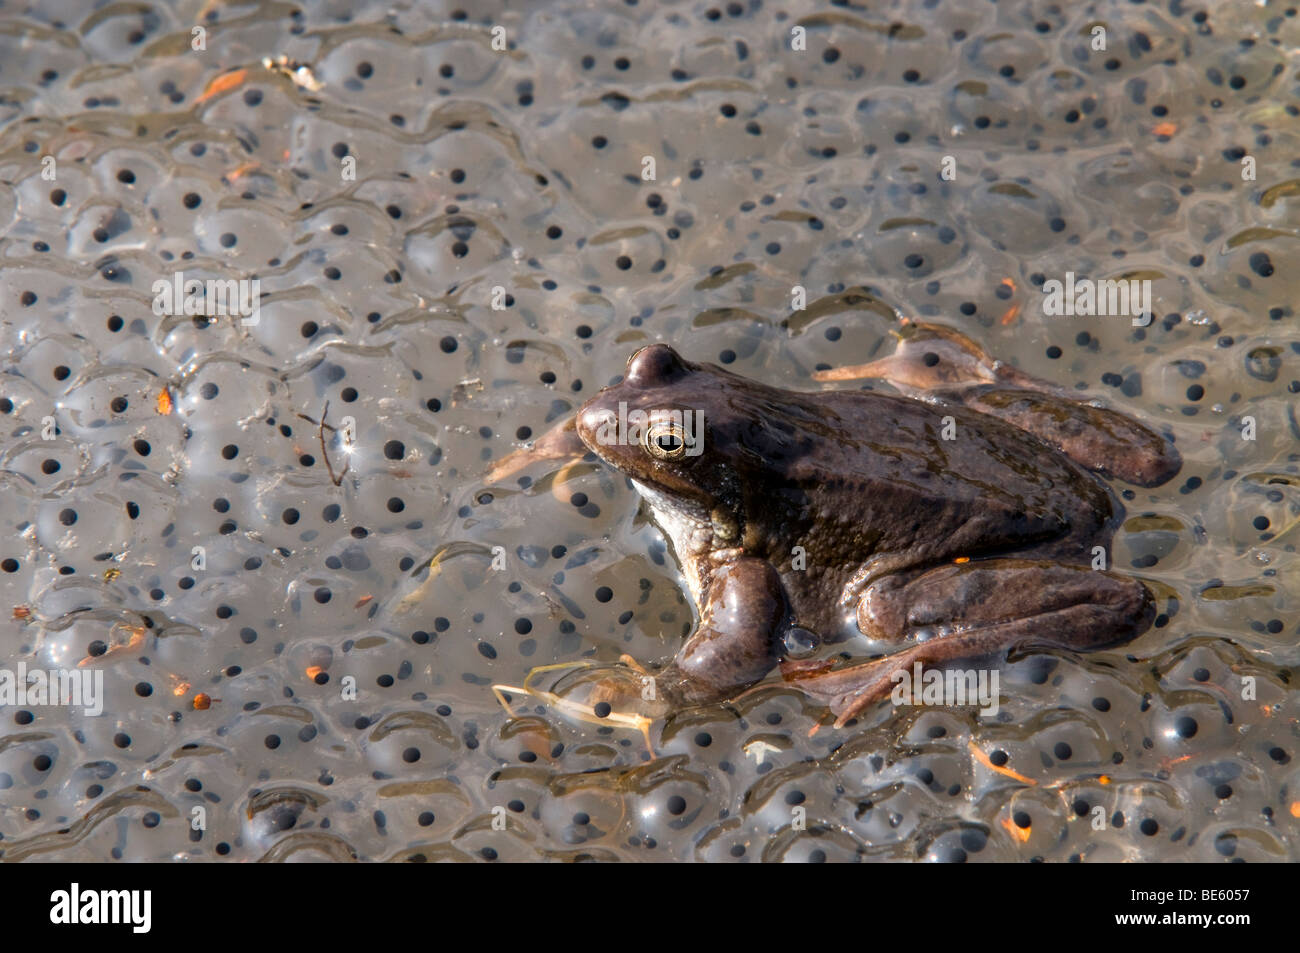 Frosch Laich Stockfotos und -bilder Kaufen - Alamy